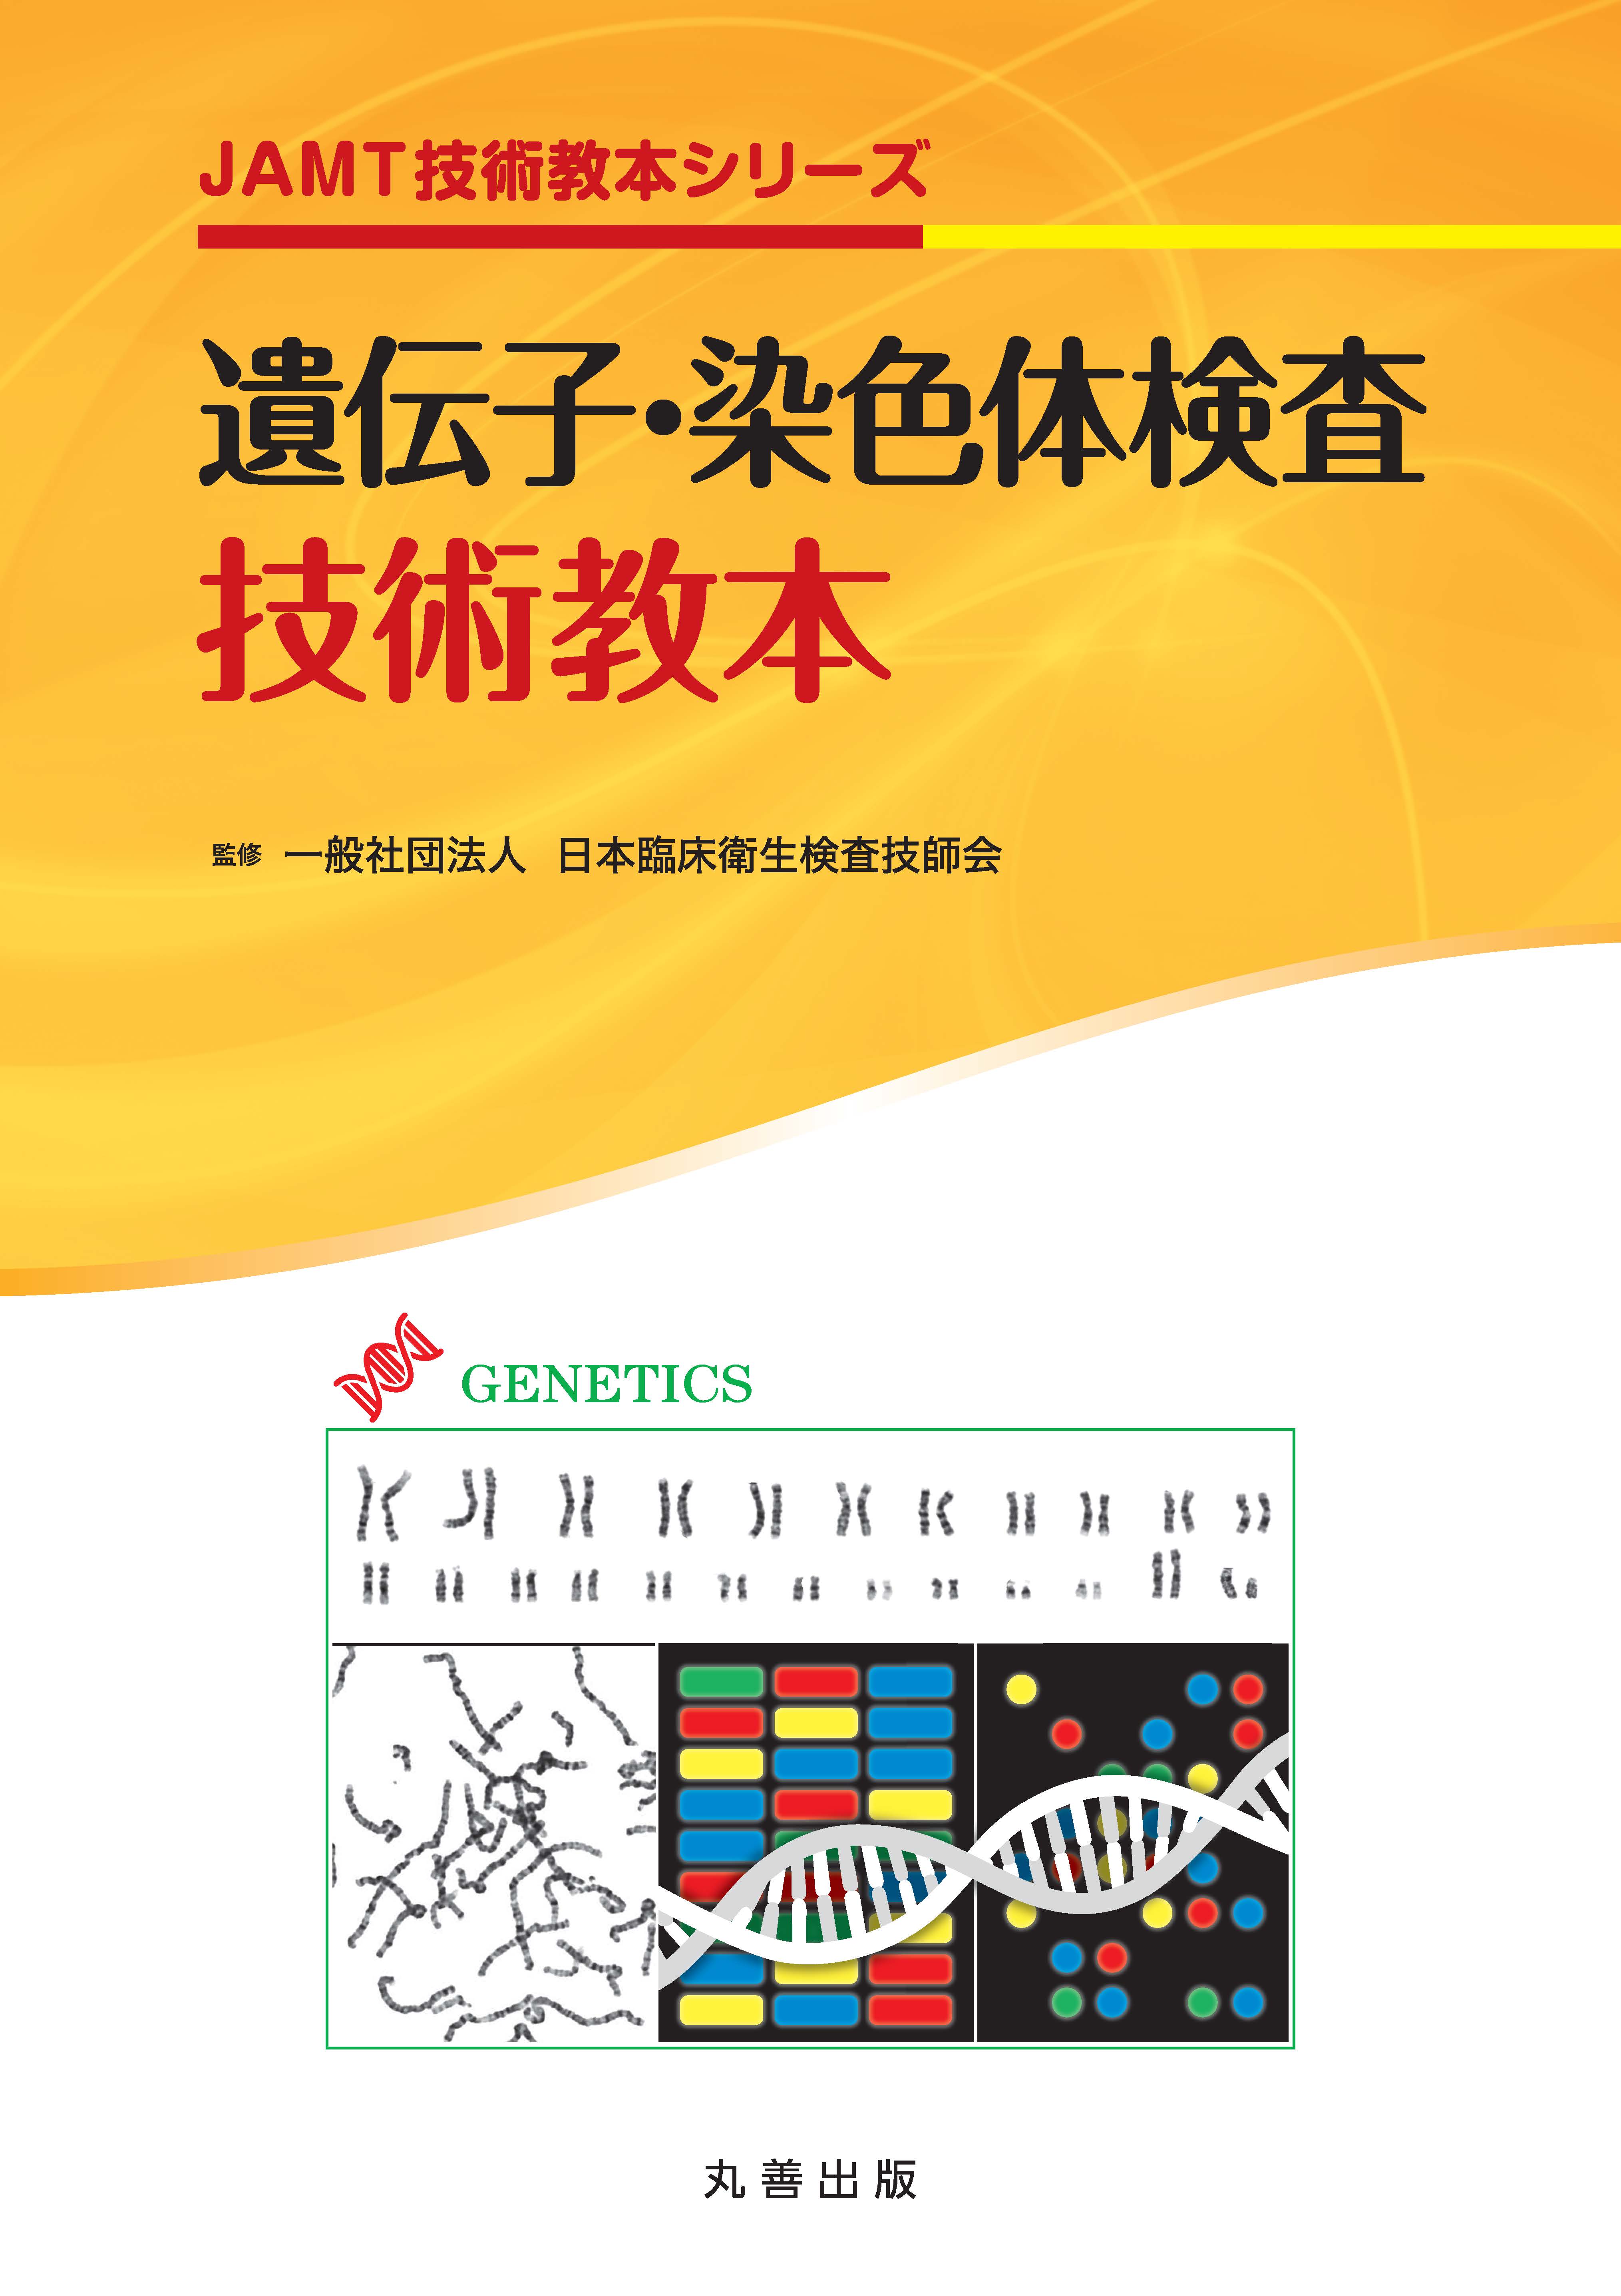 出版物 | 一般社団法人 日本臨床衛生検査技師会